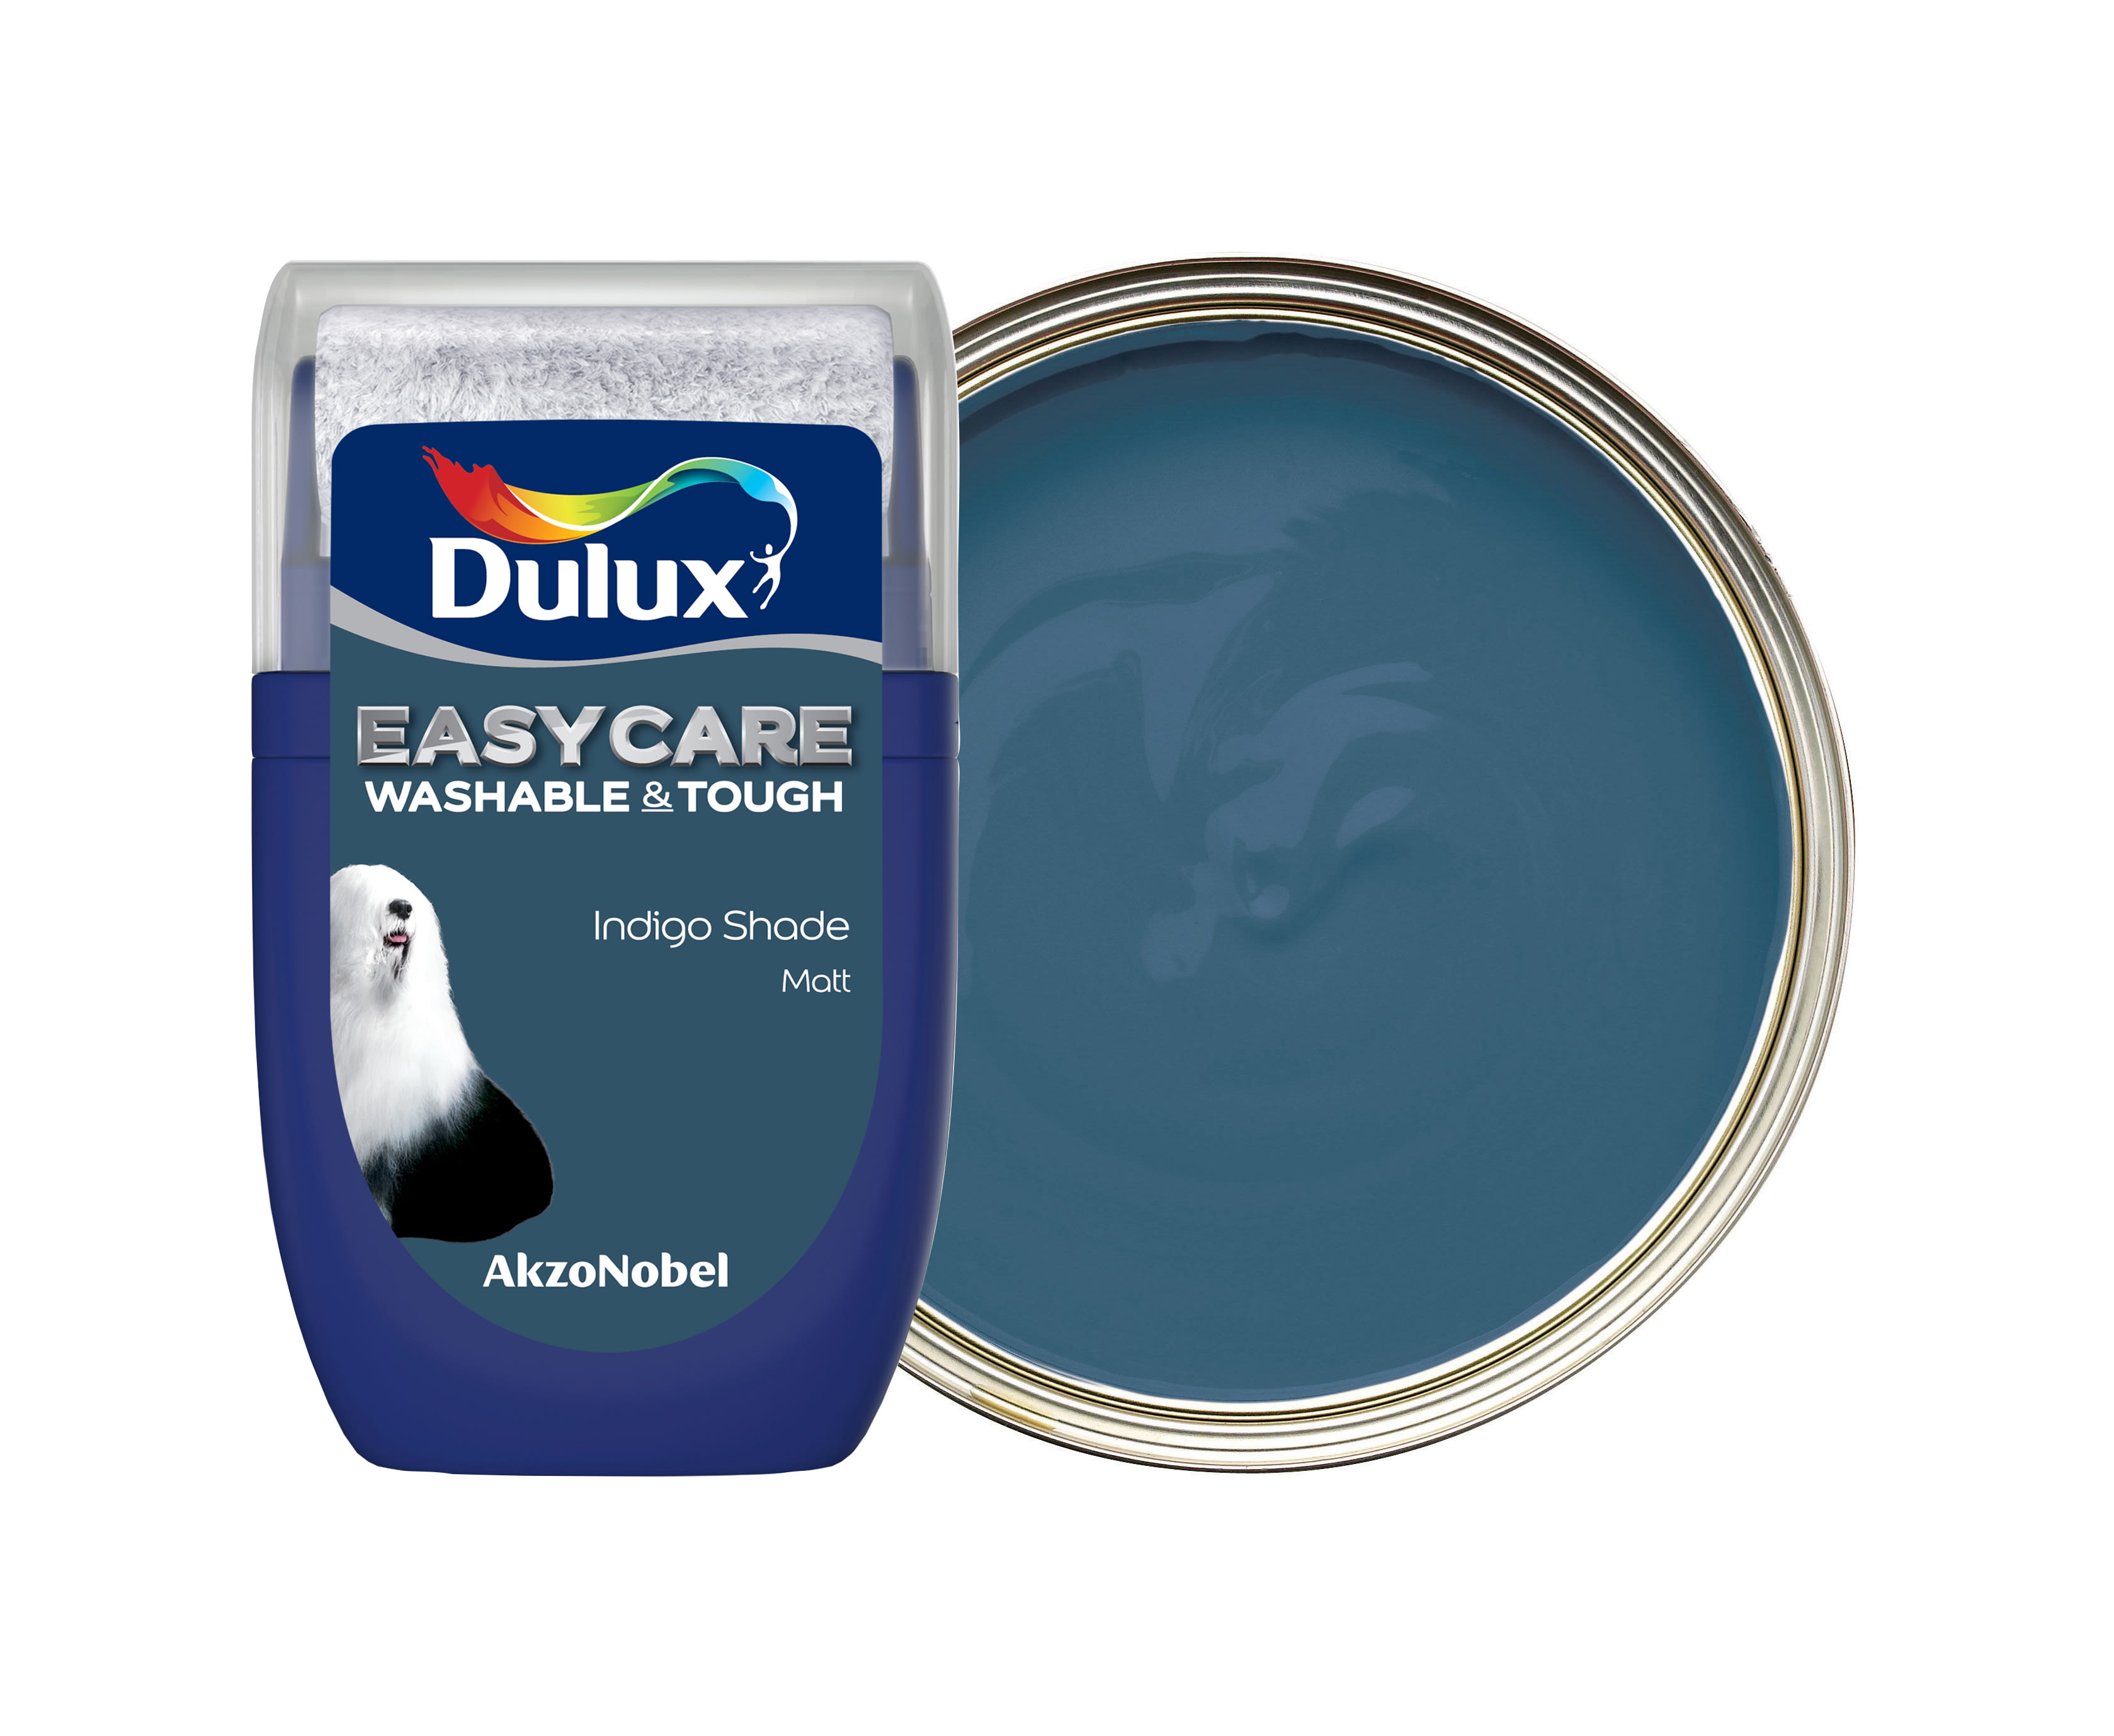 Dulux Easycare Washable & Tough Paint Tester Pot